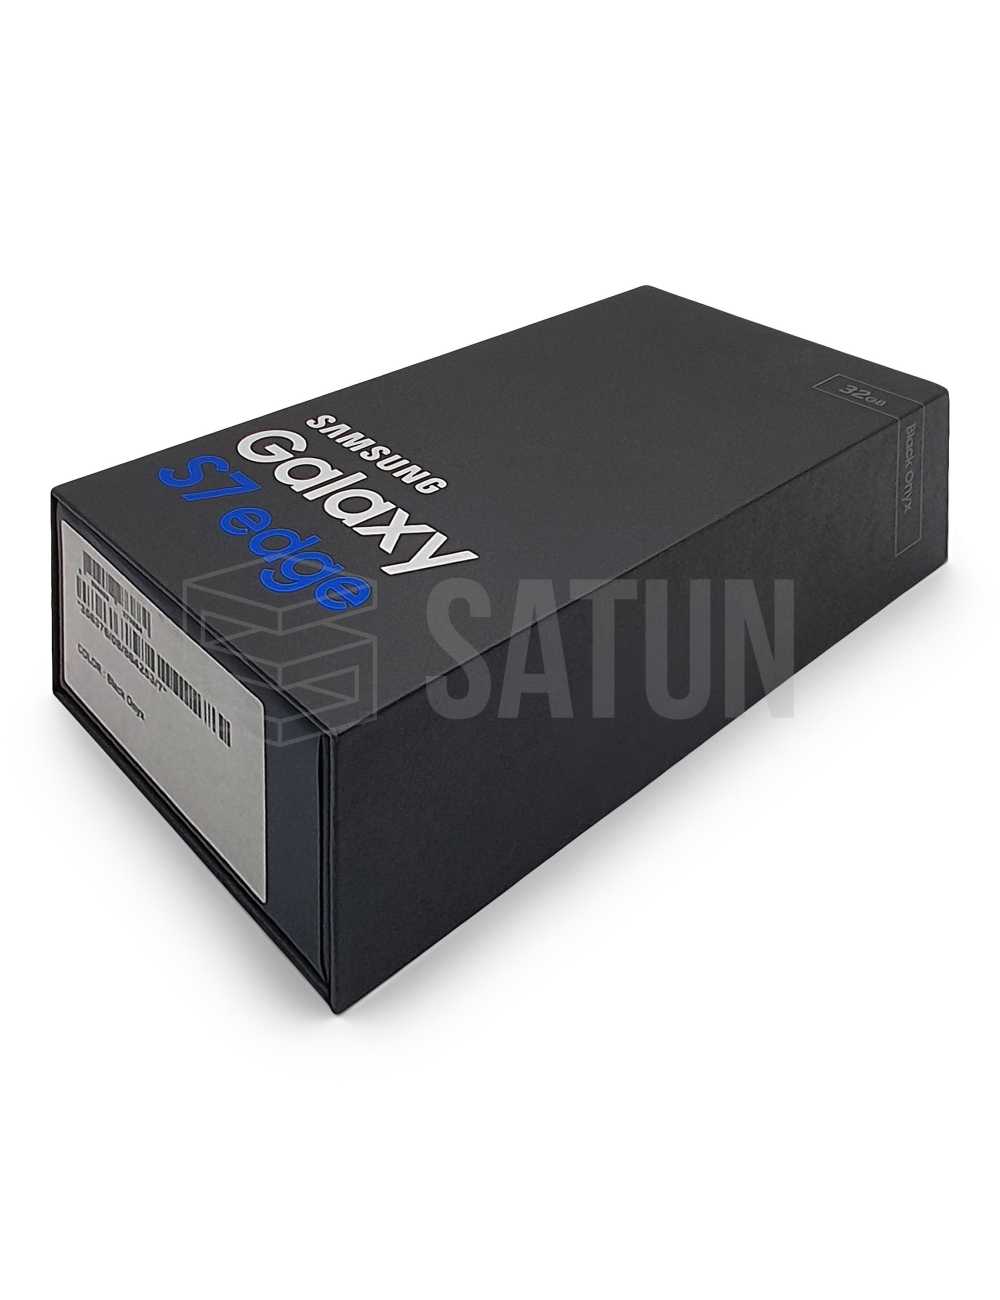 Caja original con cargador, cable y auriculares Samsung Galaxy S7 EDGE